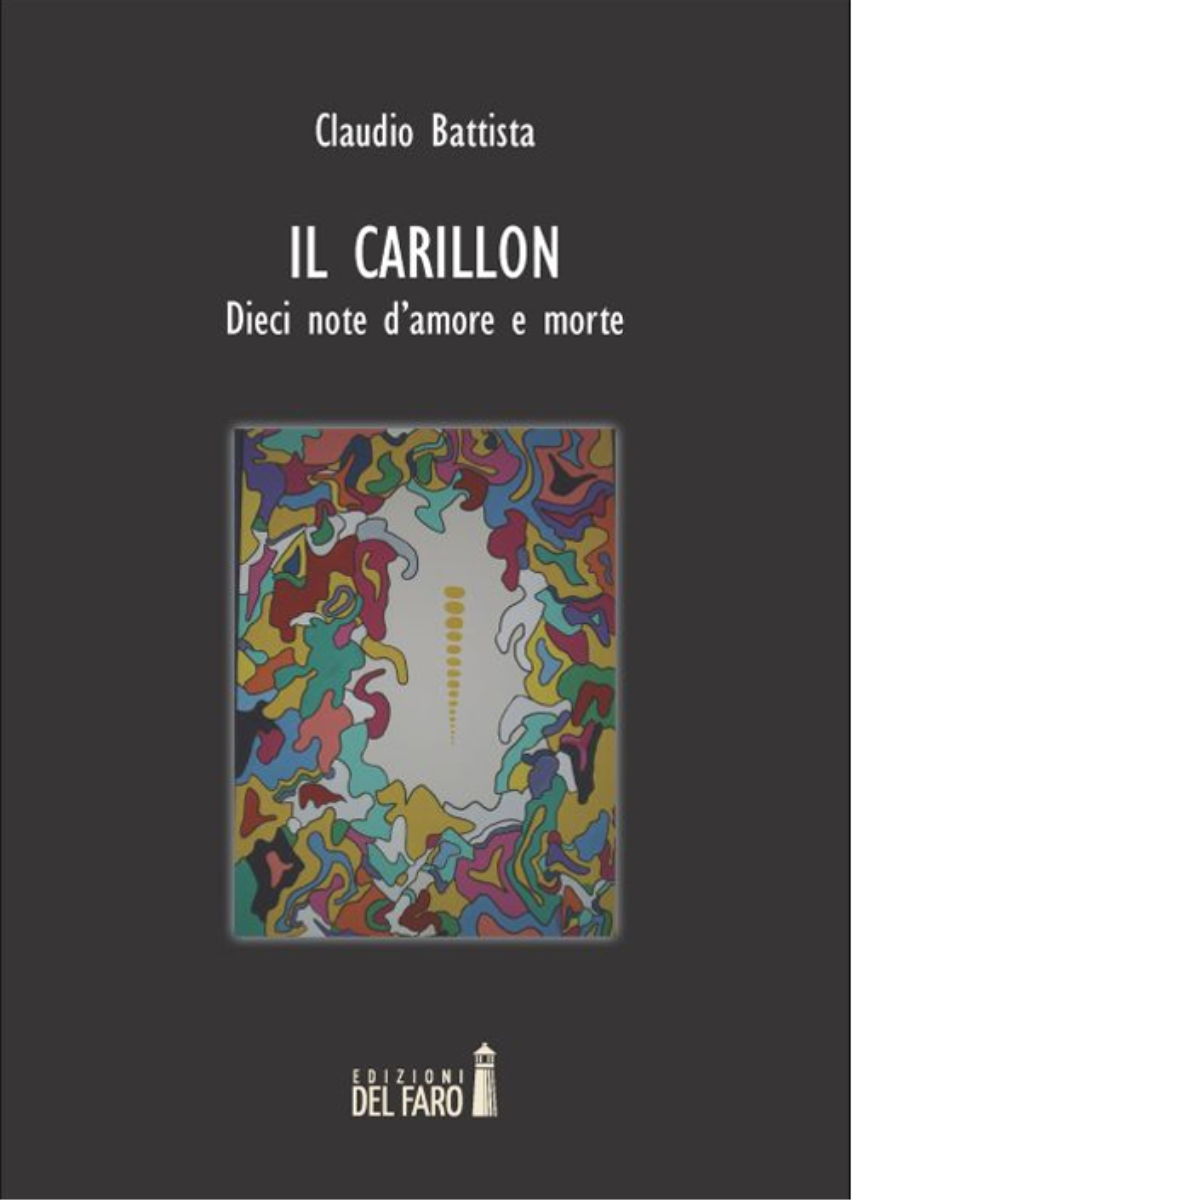 Il carillon. Dieci note d'amore e morte di Battista Claudio - Del Faro, 2014